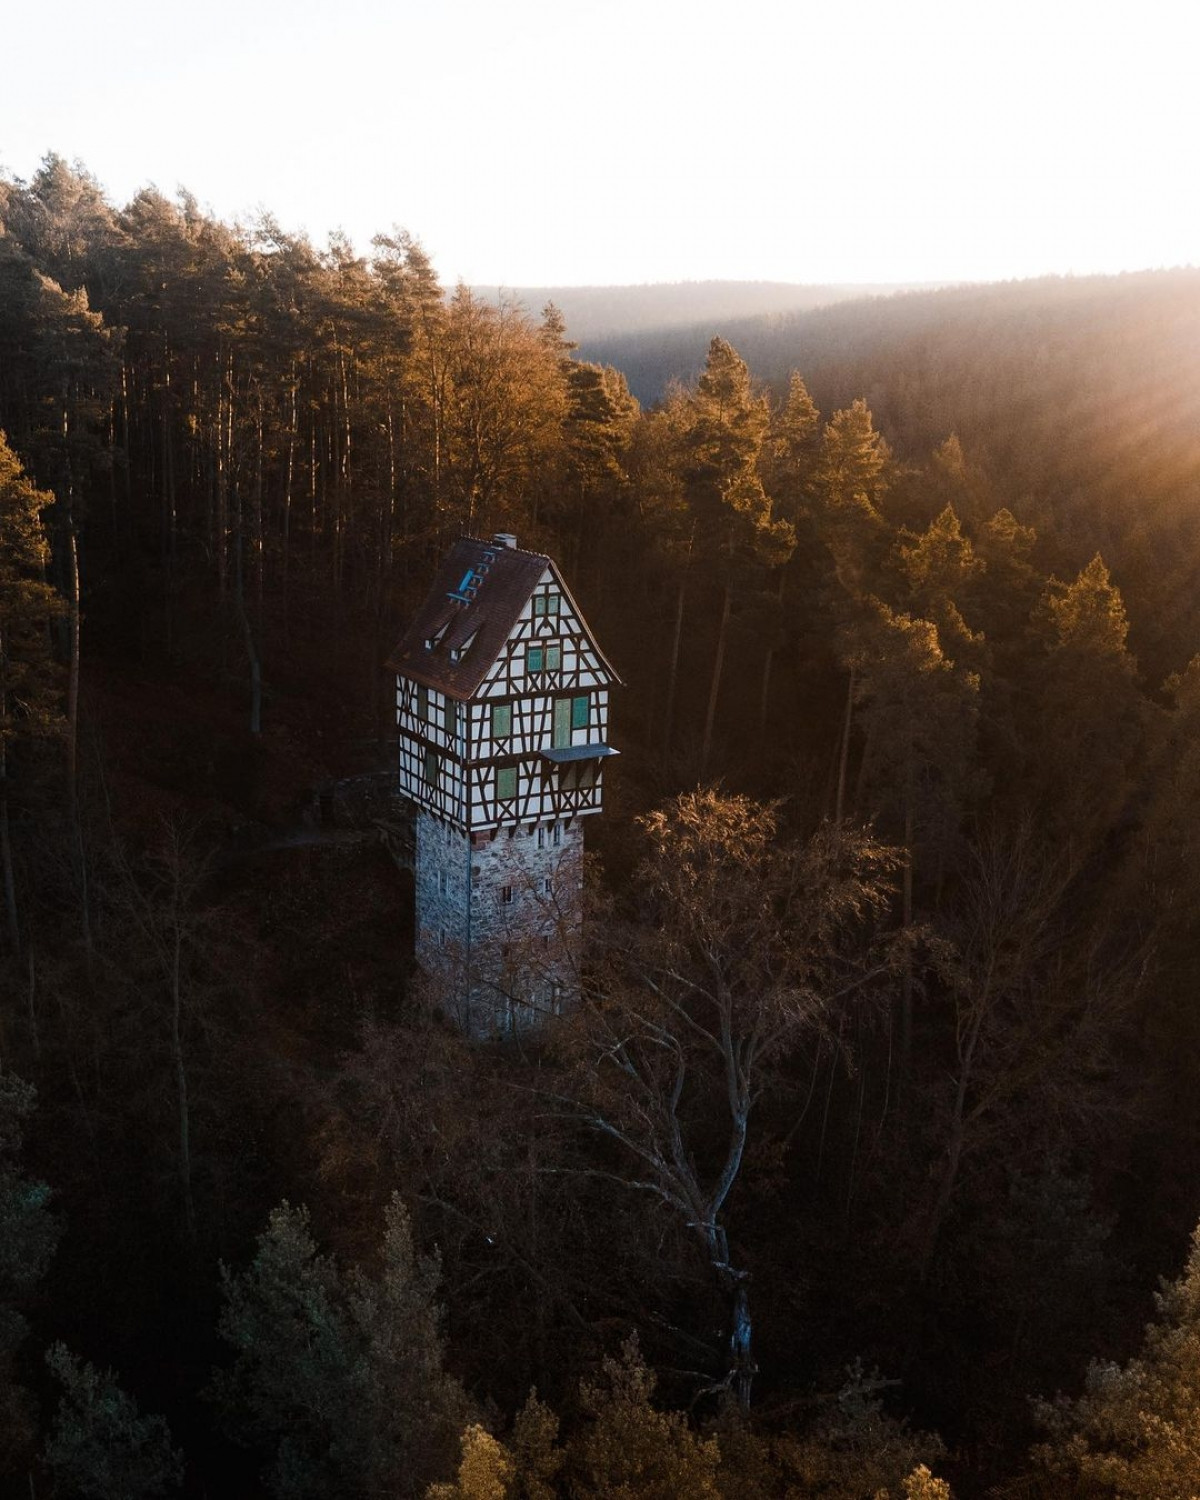 Nằm giữa rừng cây rậm rạp, ngôi nhà cheo leo này là điểm check-in nổi tiếng ở khu vực Thuringia (Đức). Đây vốn là điểm dừng chân và giải trí trong các chuyến đi săn, được xây dựng từ đầu thế kỷ 20 bởi một vị công tước. Từ đây, du khách có thể tham quan các đô thị cổ xưa và Lâu đài Wartburg – một Di sản thế giới được UNESCO ghi danh.